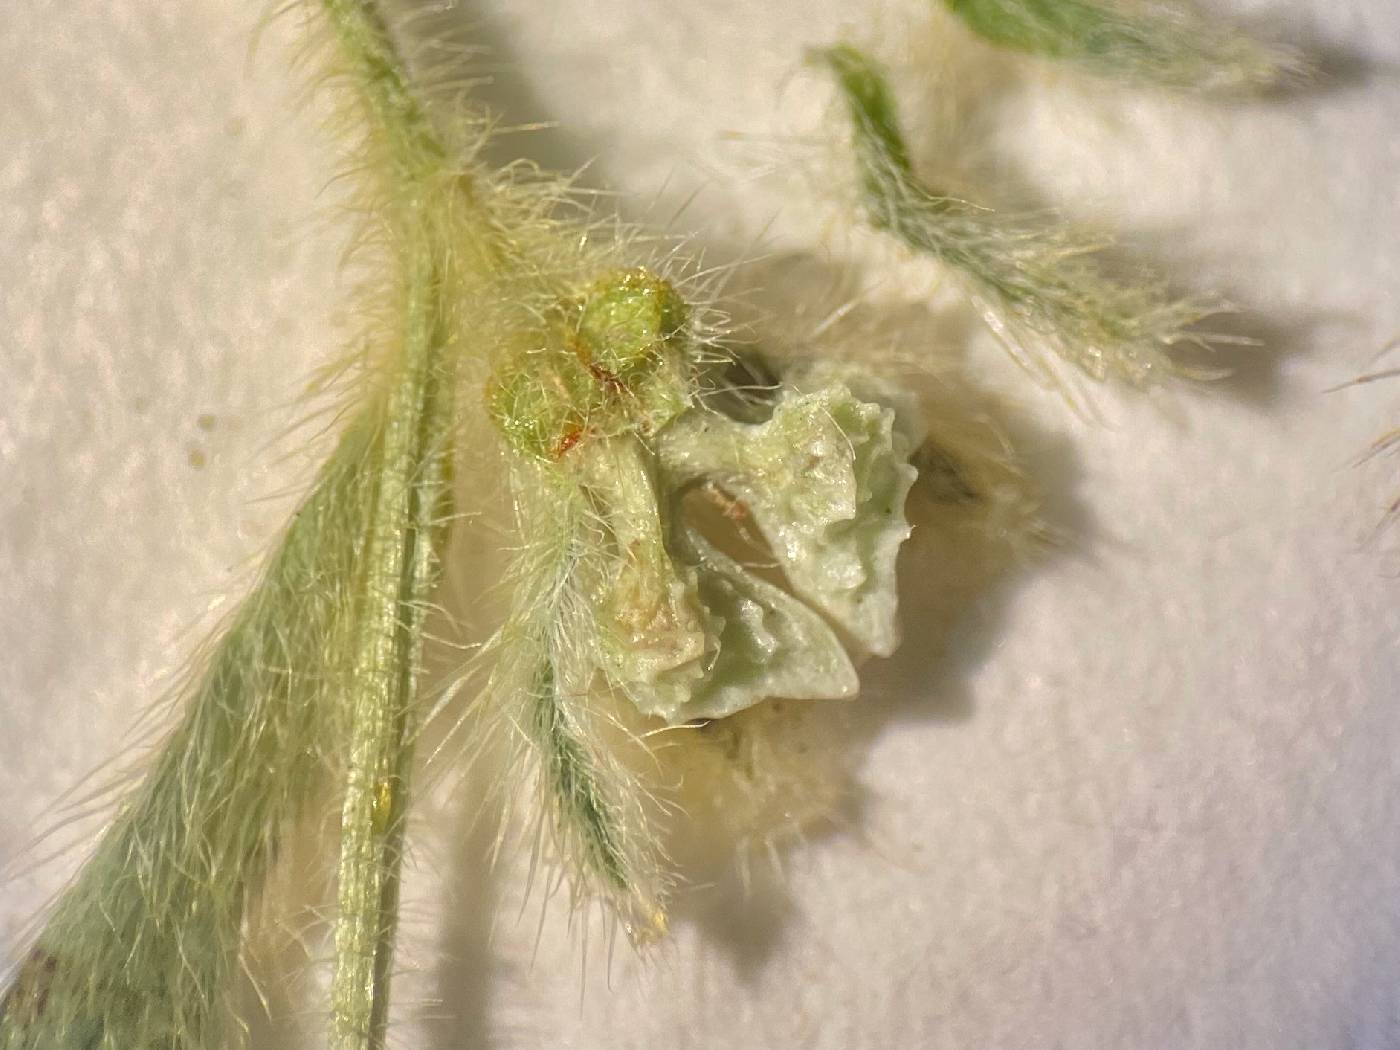 Plagiobothrys pringlei image